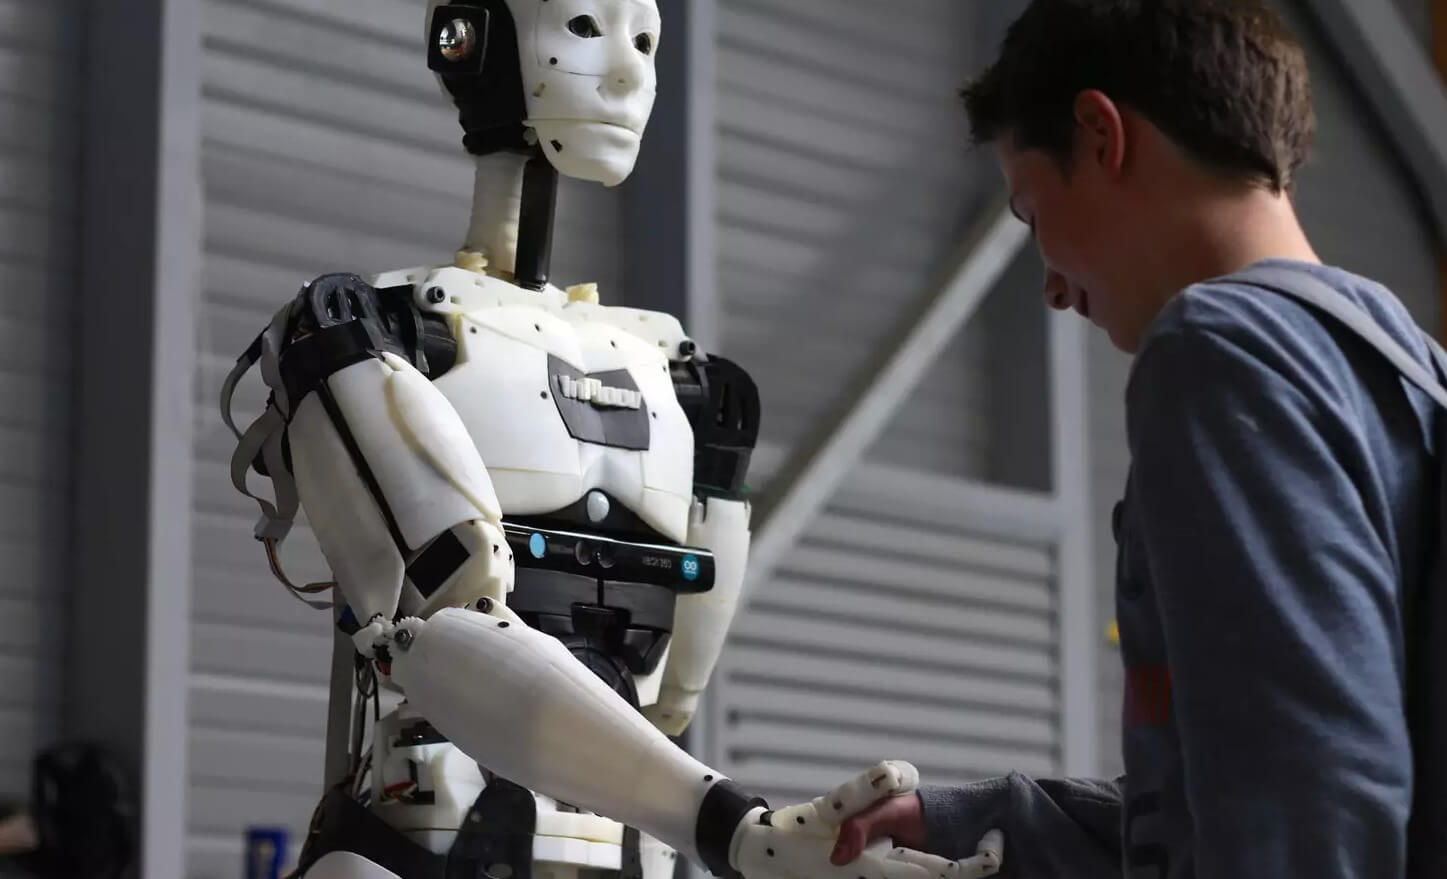 Что умеет генератор текстов. Неужели в будущем роботы будут делать домашние задания за учеников? Фото.